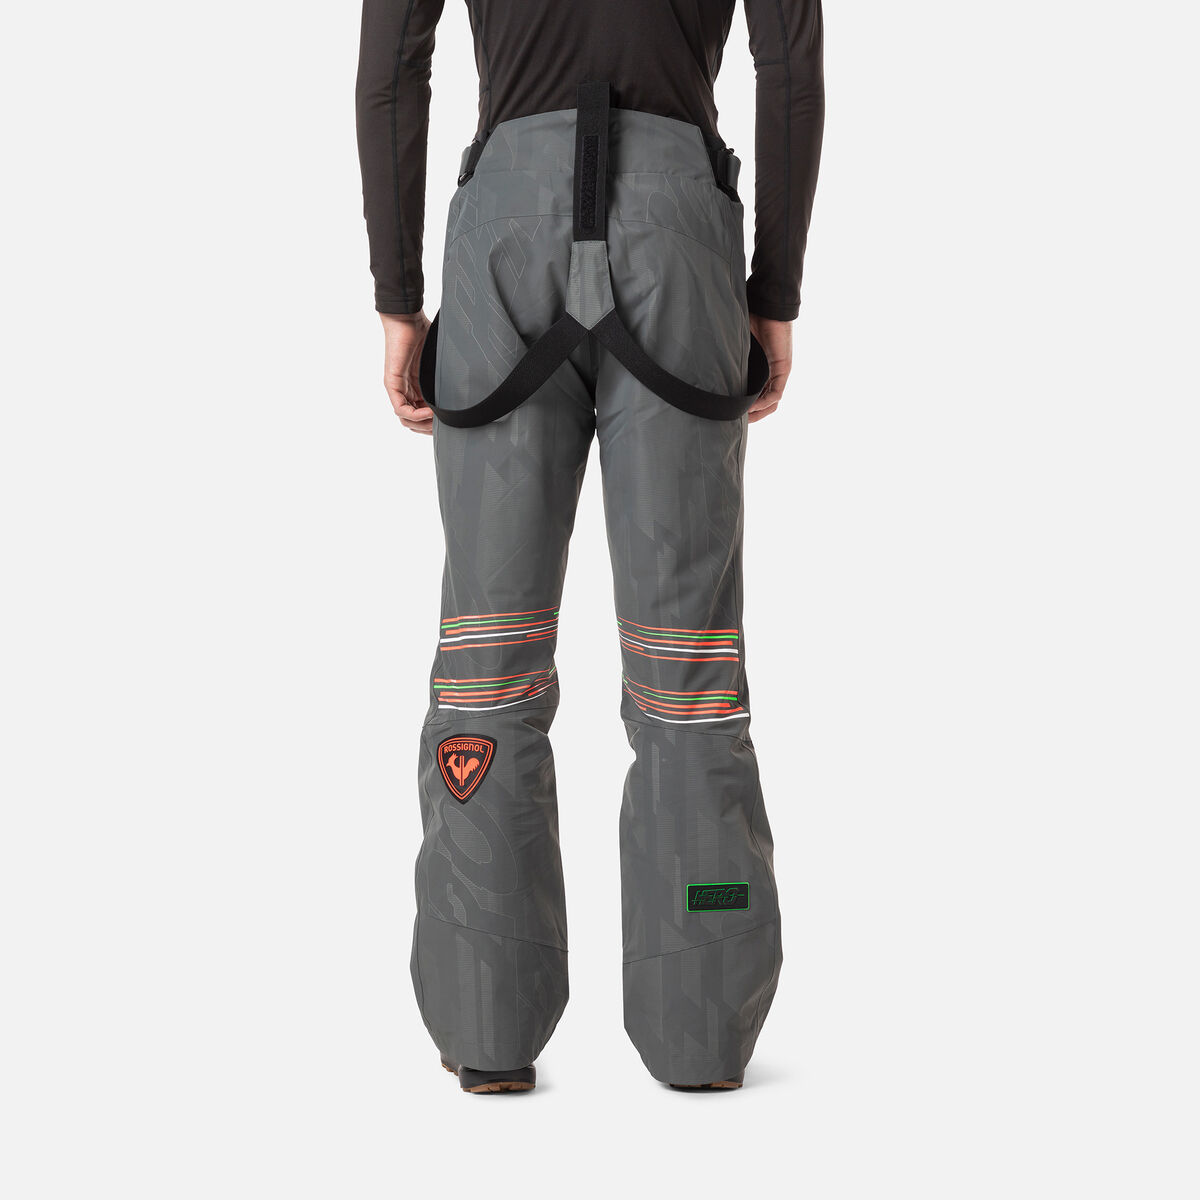 Rossignol Men's Hero Ski Pants Grey